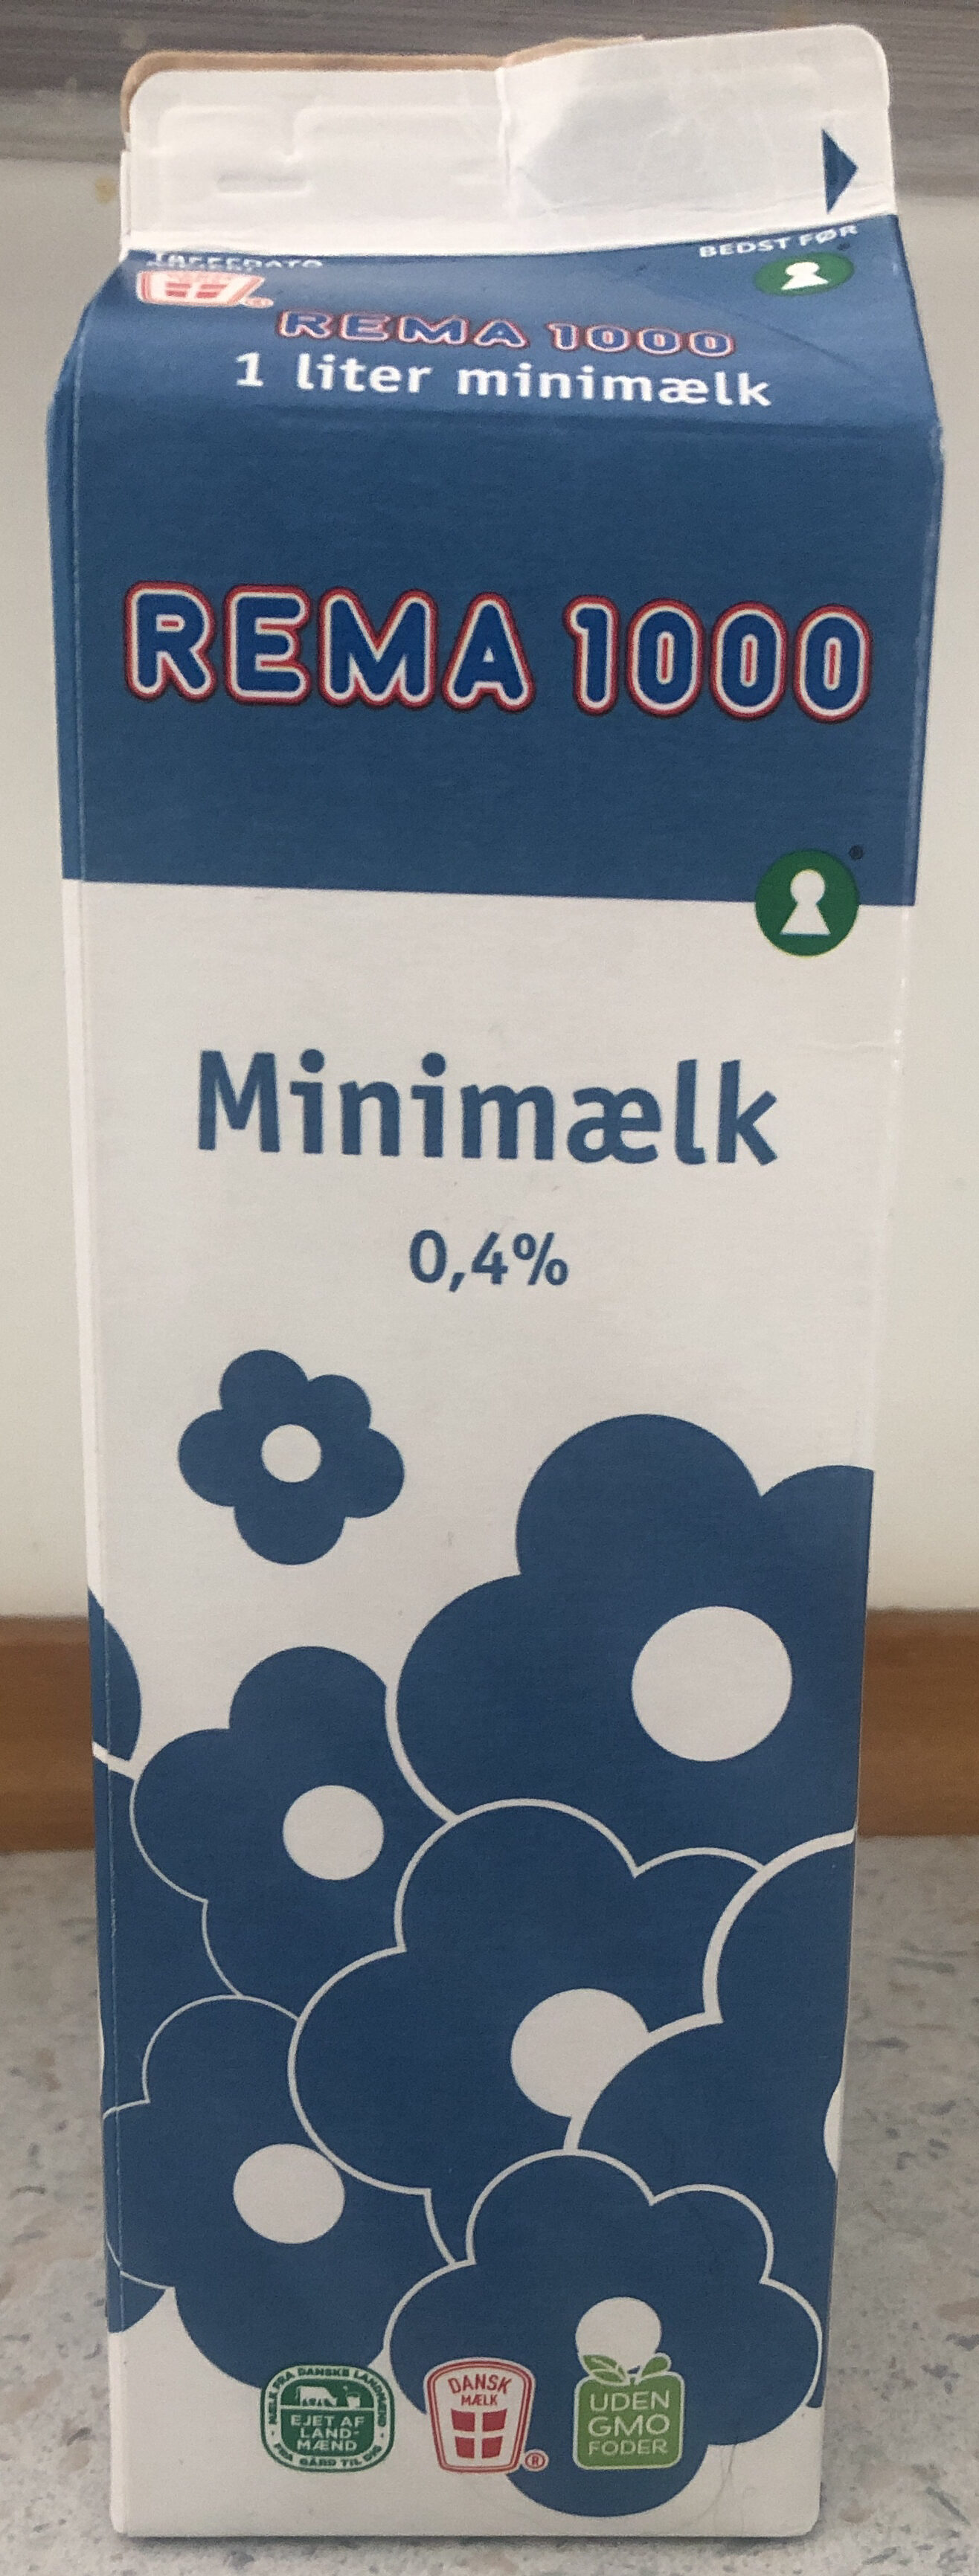 Mælk - Produkt